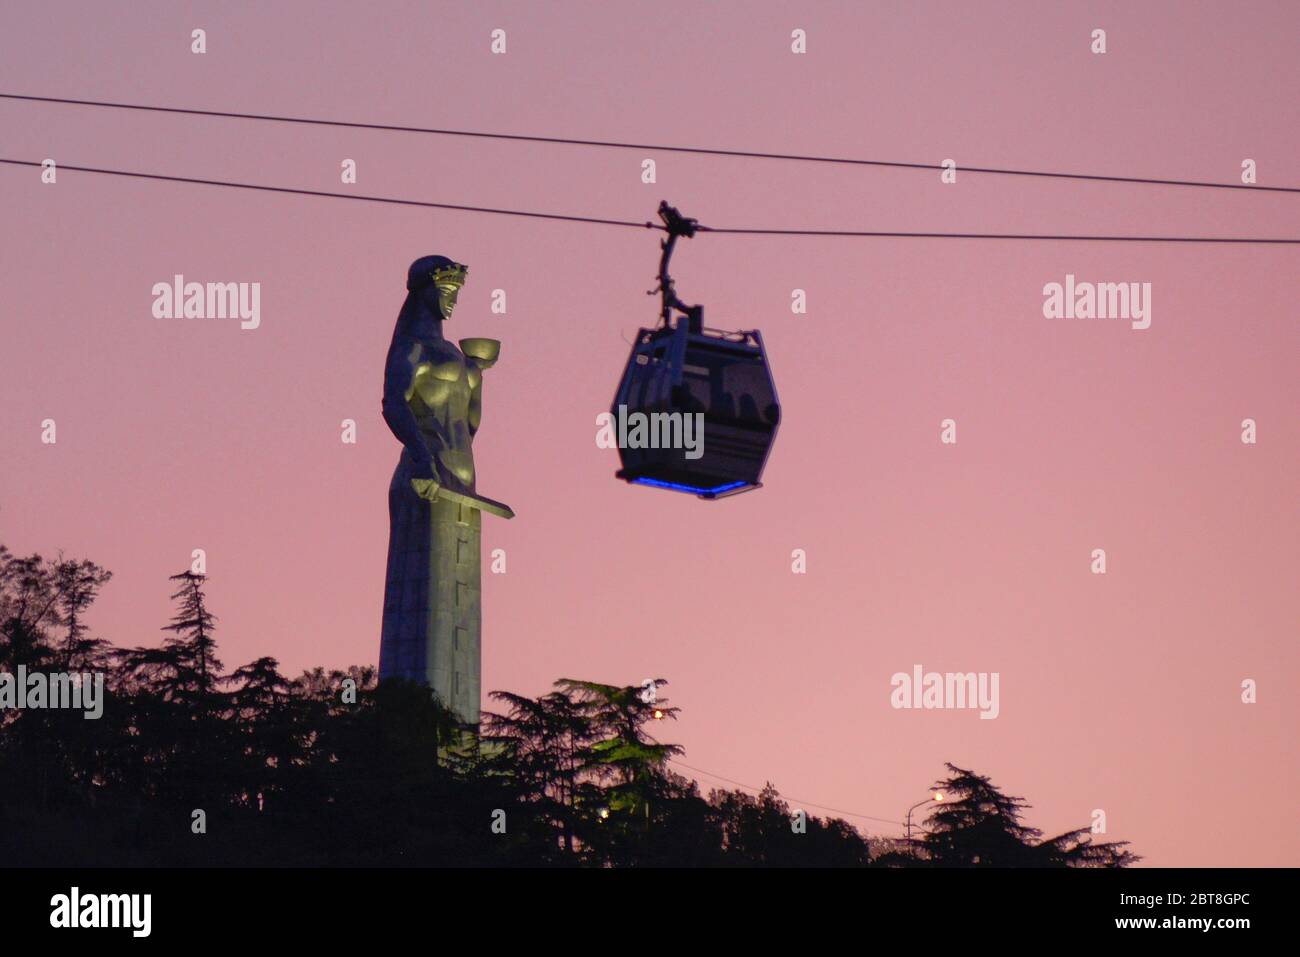 Tbilissi : coucher de soleil sur le monument et téléphérique de Kartlis Deda, République de Géorgie Banque D'Images